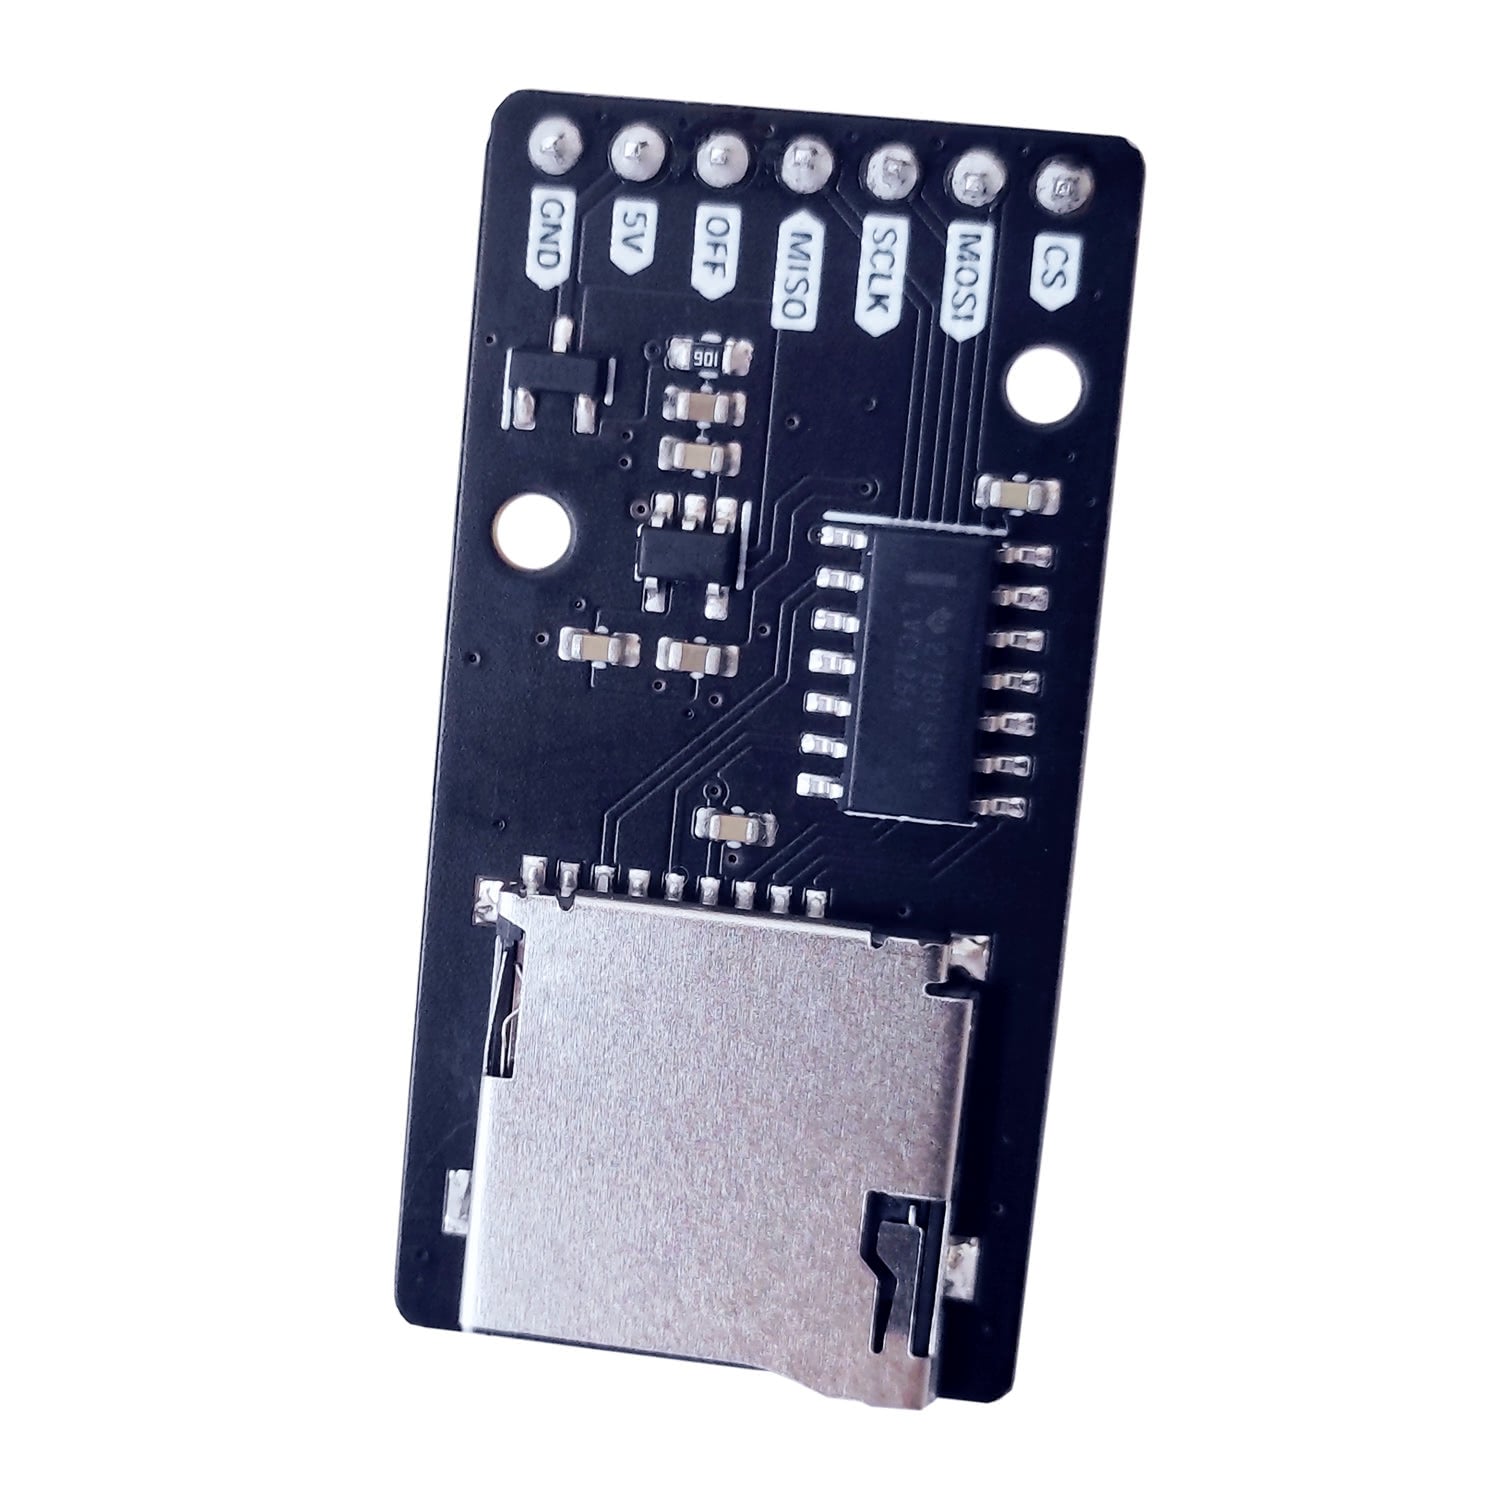 Lecteur de carte micro SD uPesy pour carte Arduino, ESP32